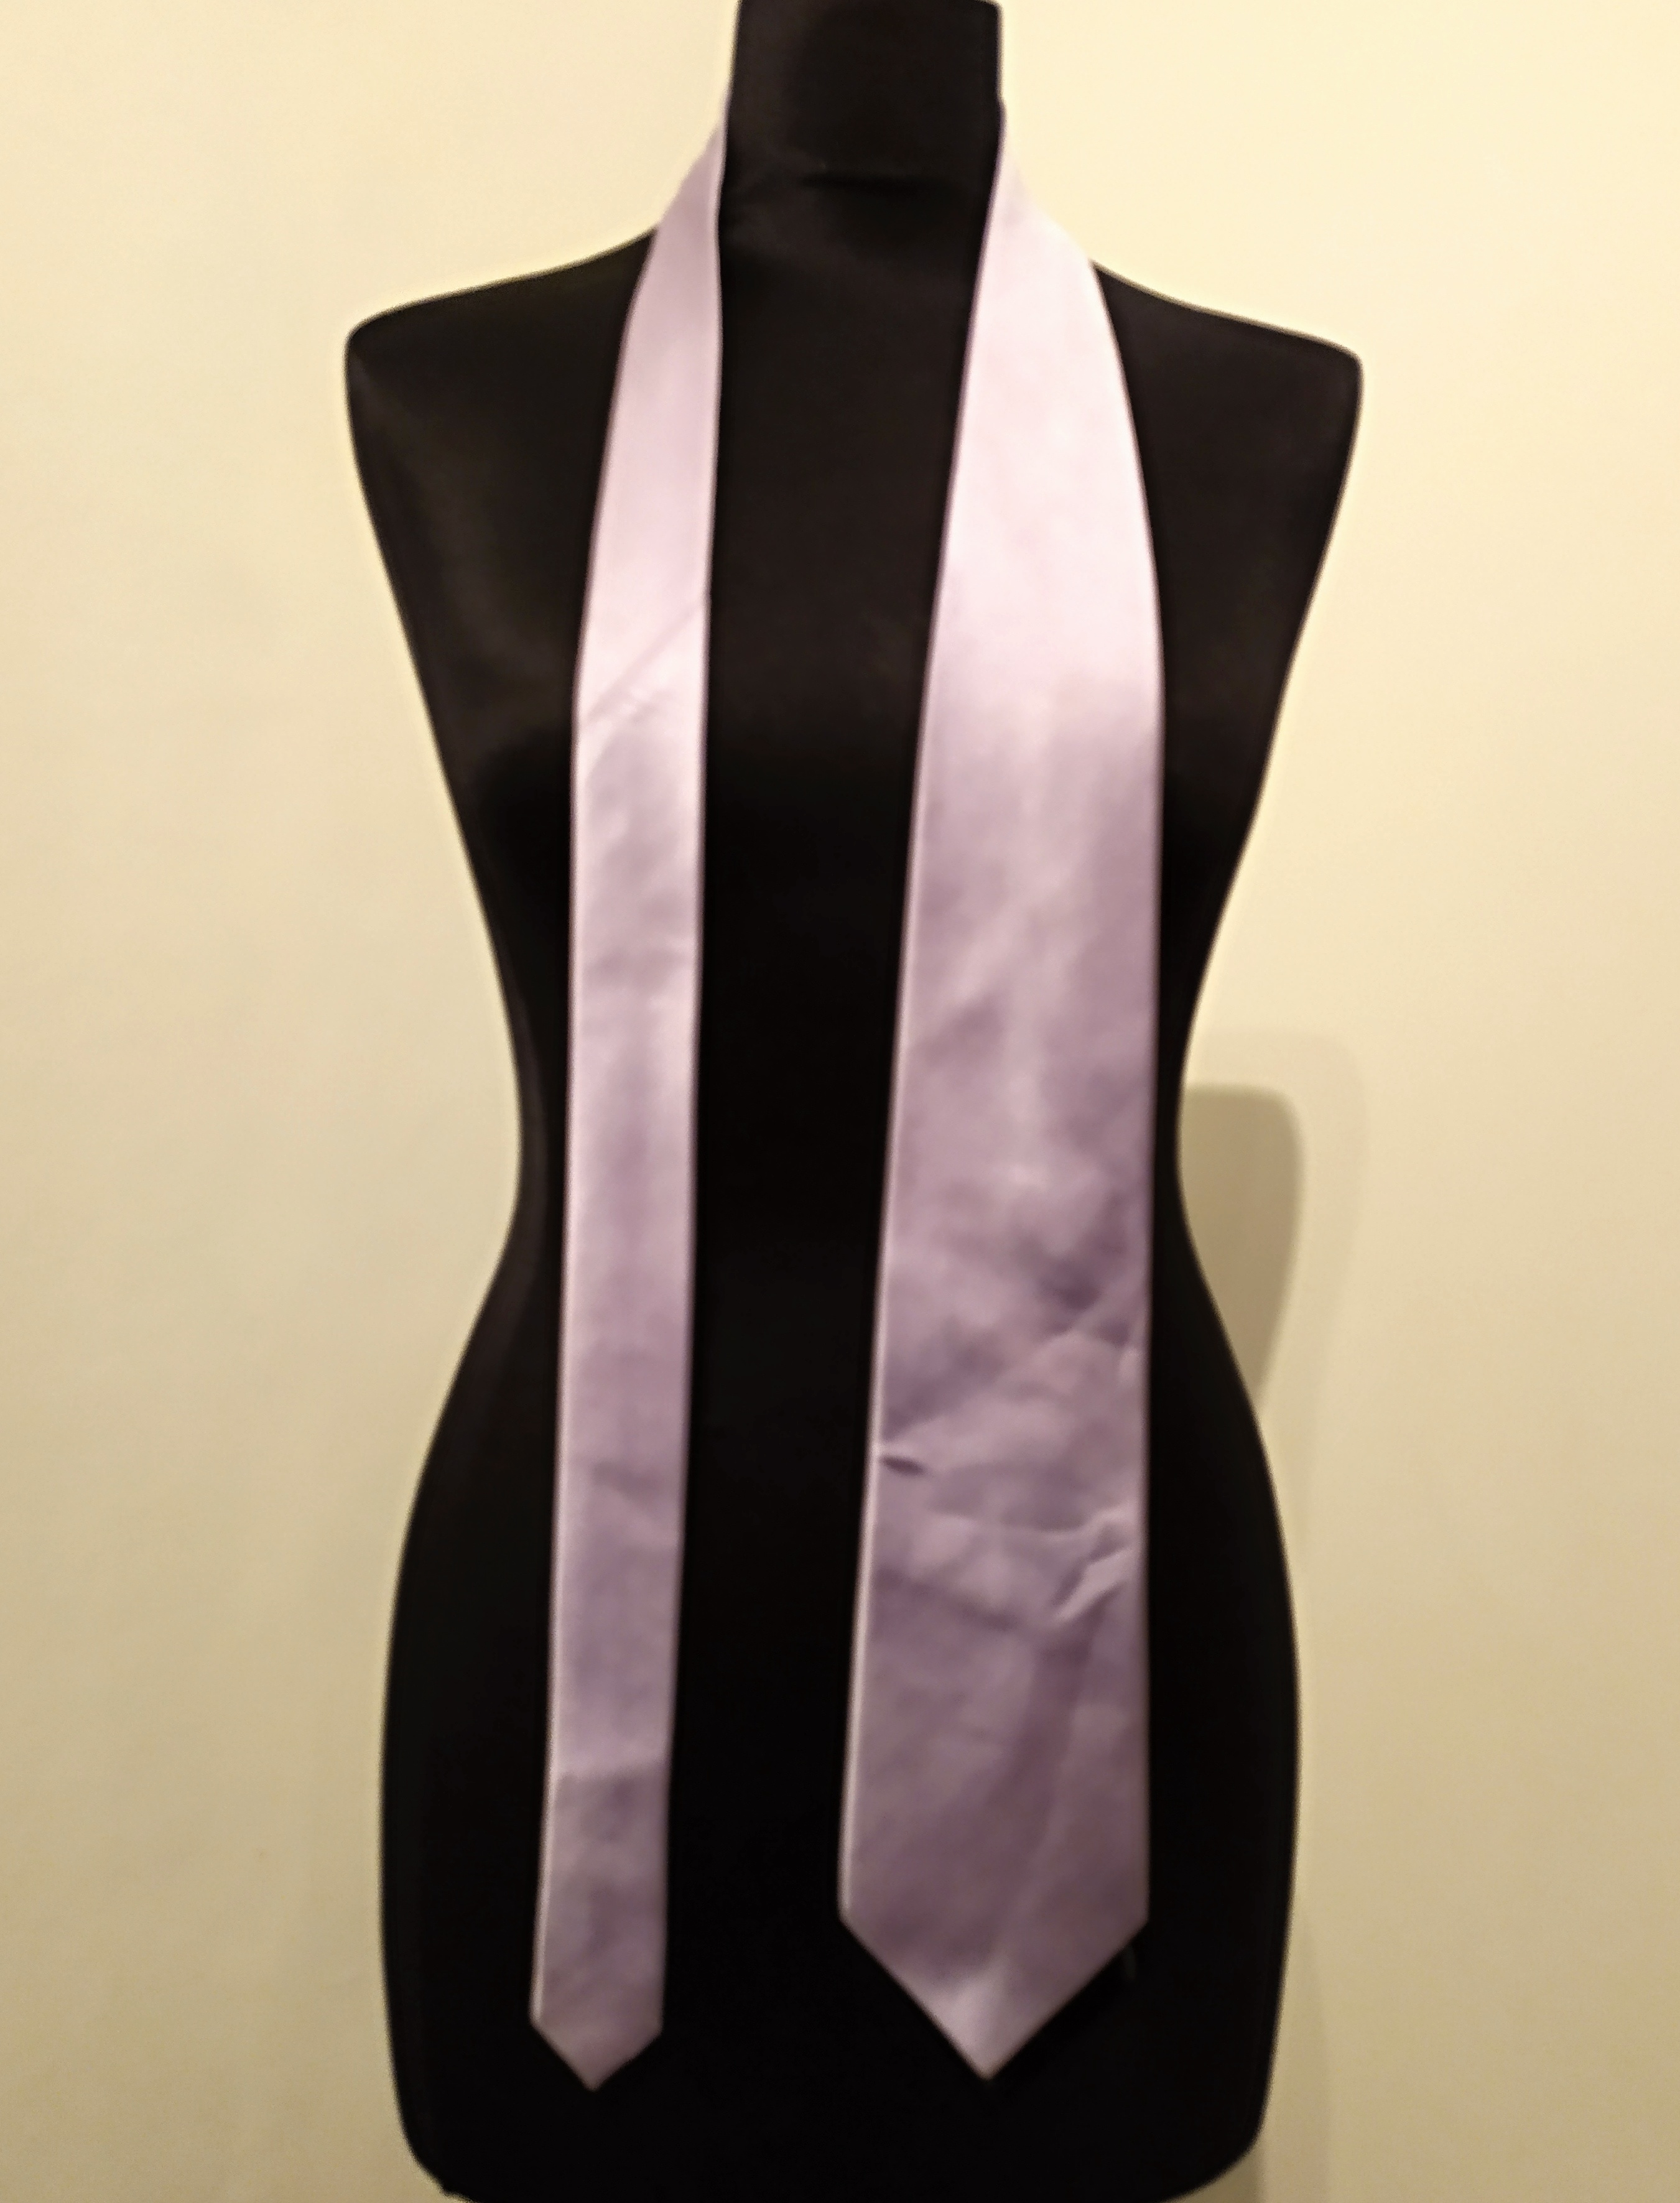 Pánská kravata fialová